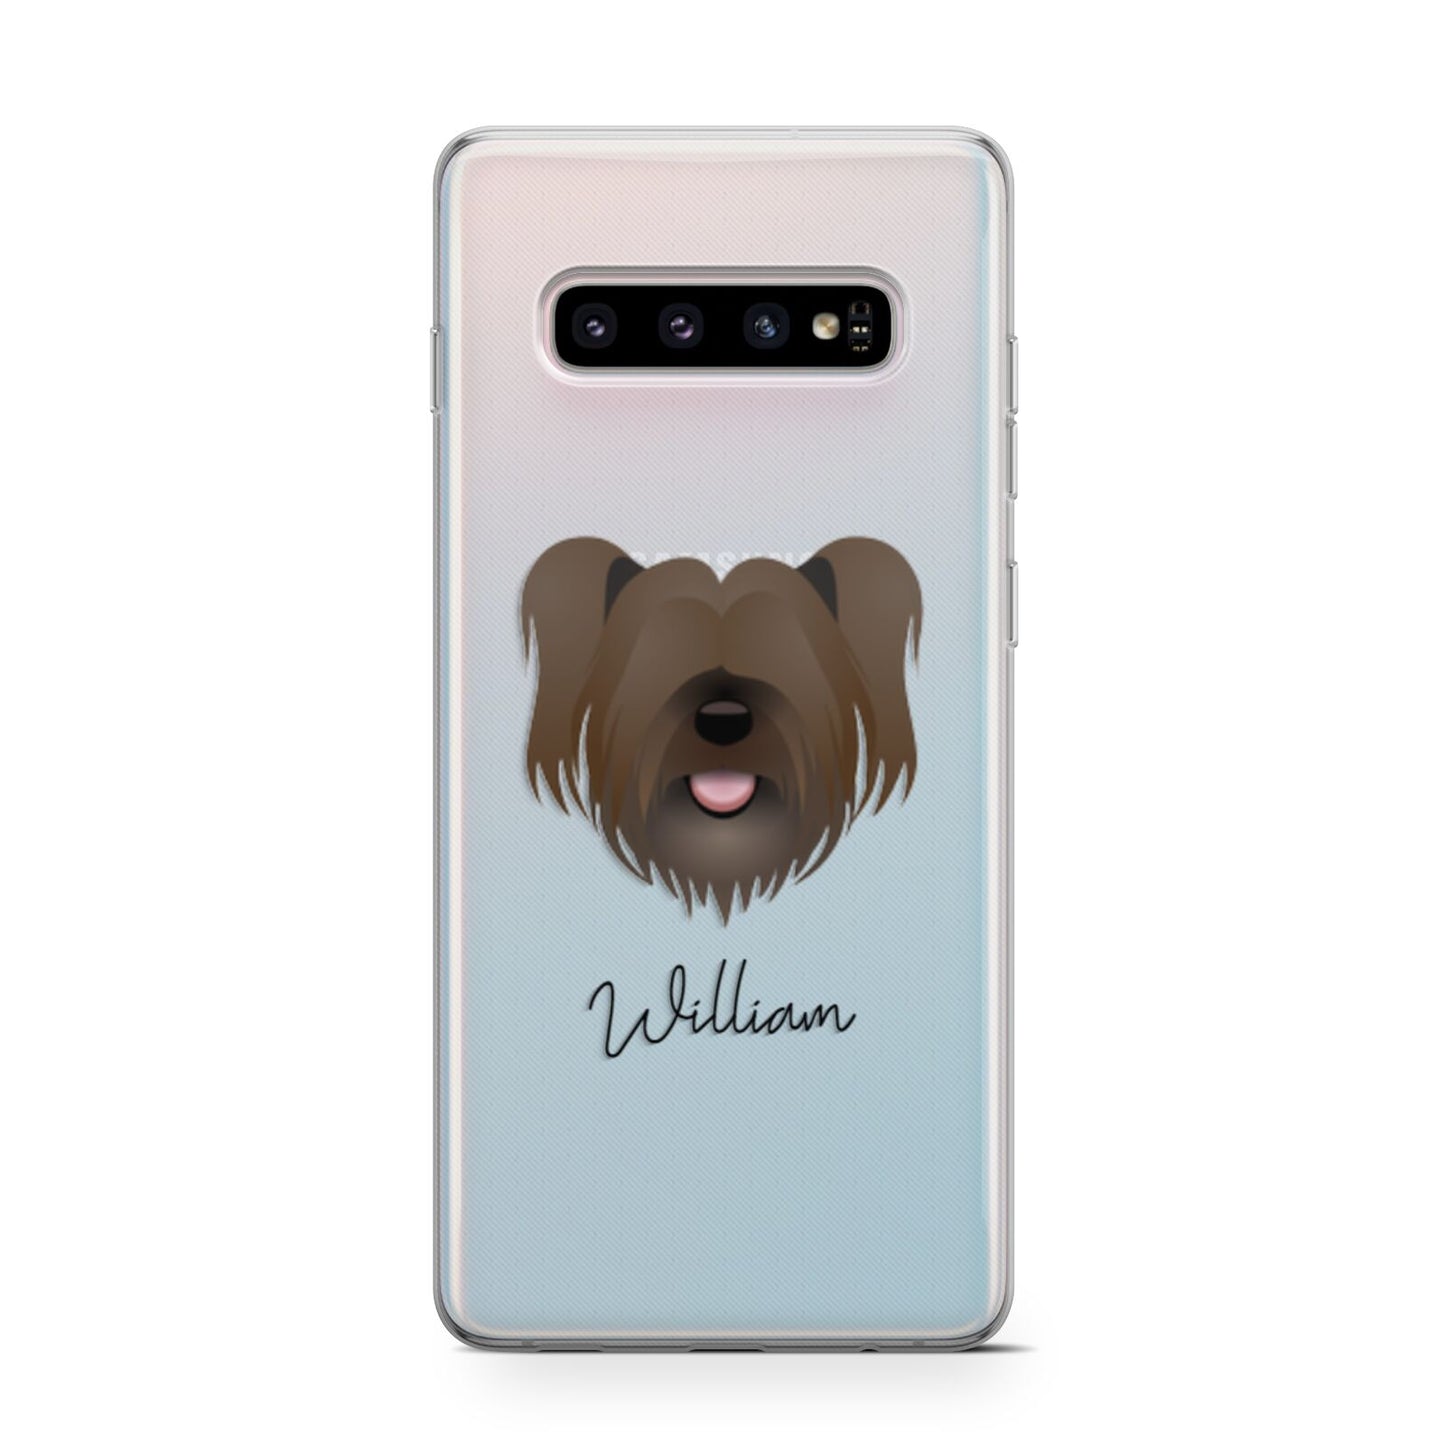 Skye Terrier Personalised Samsung Galaxy S10 Case